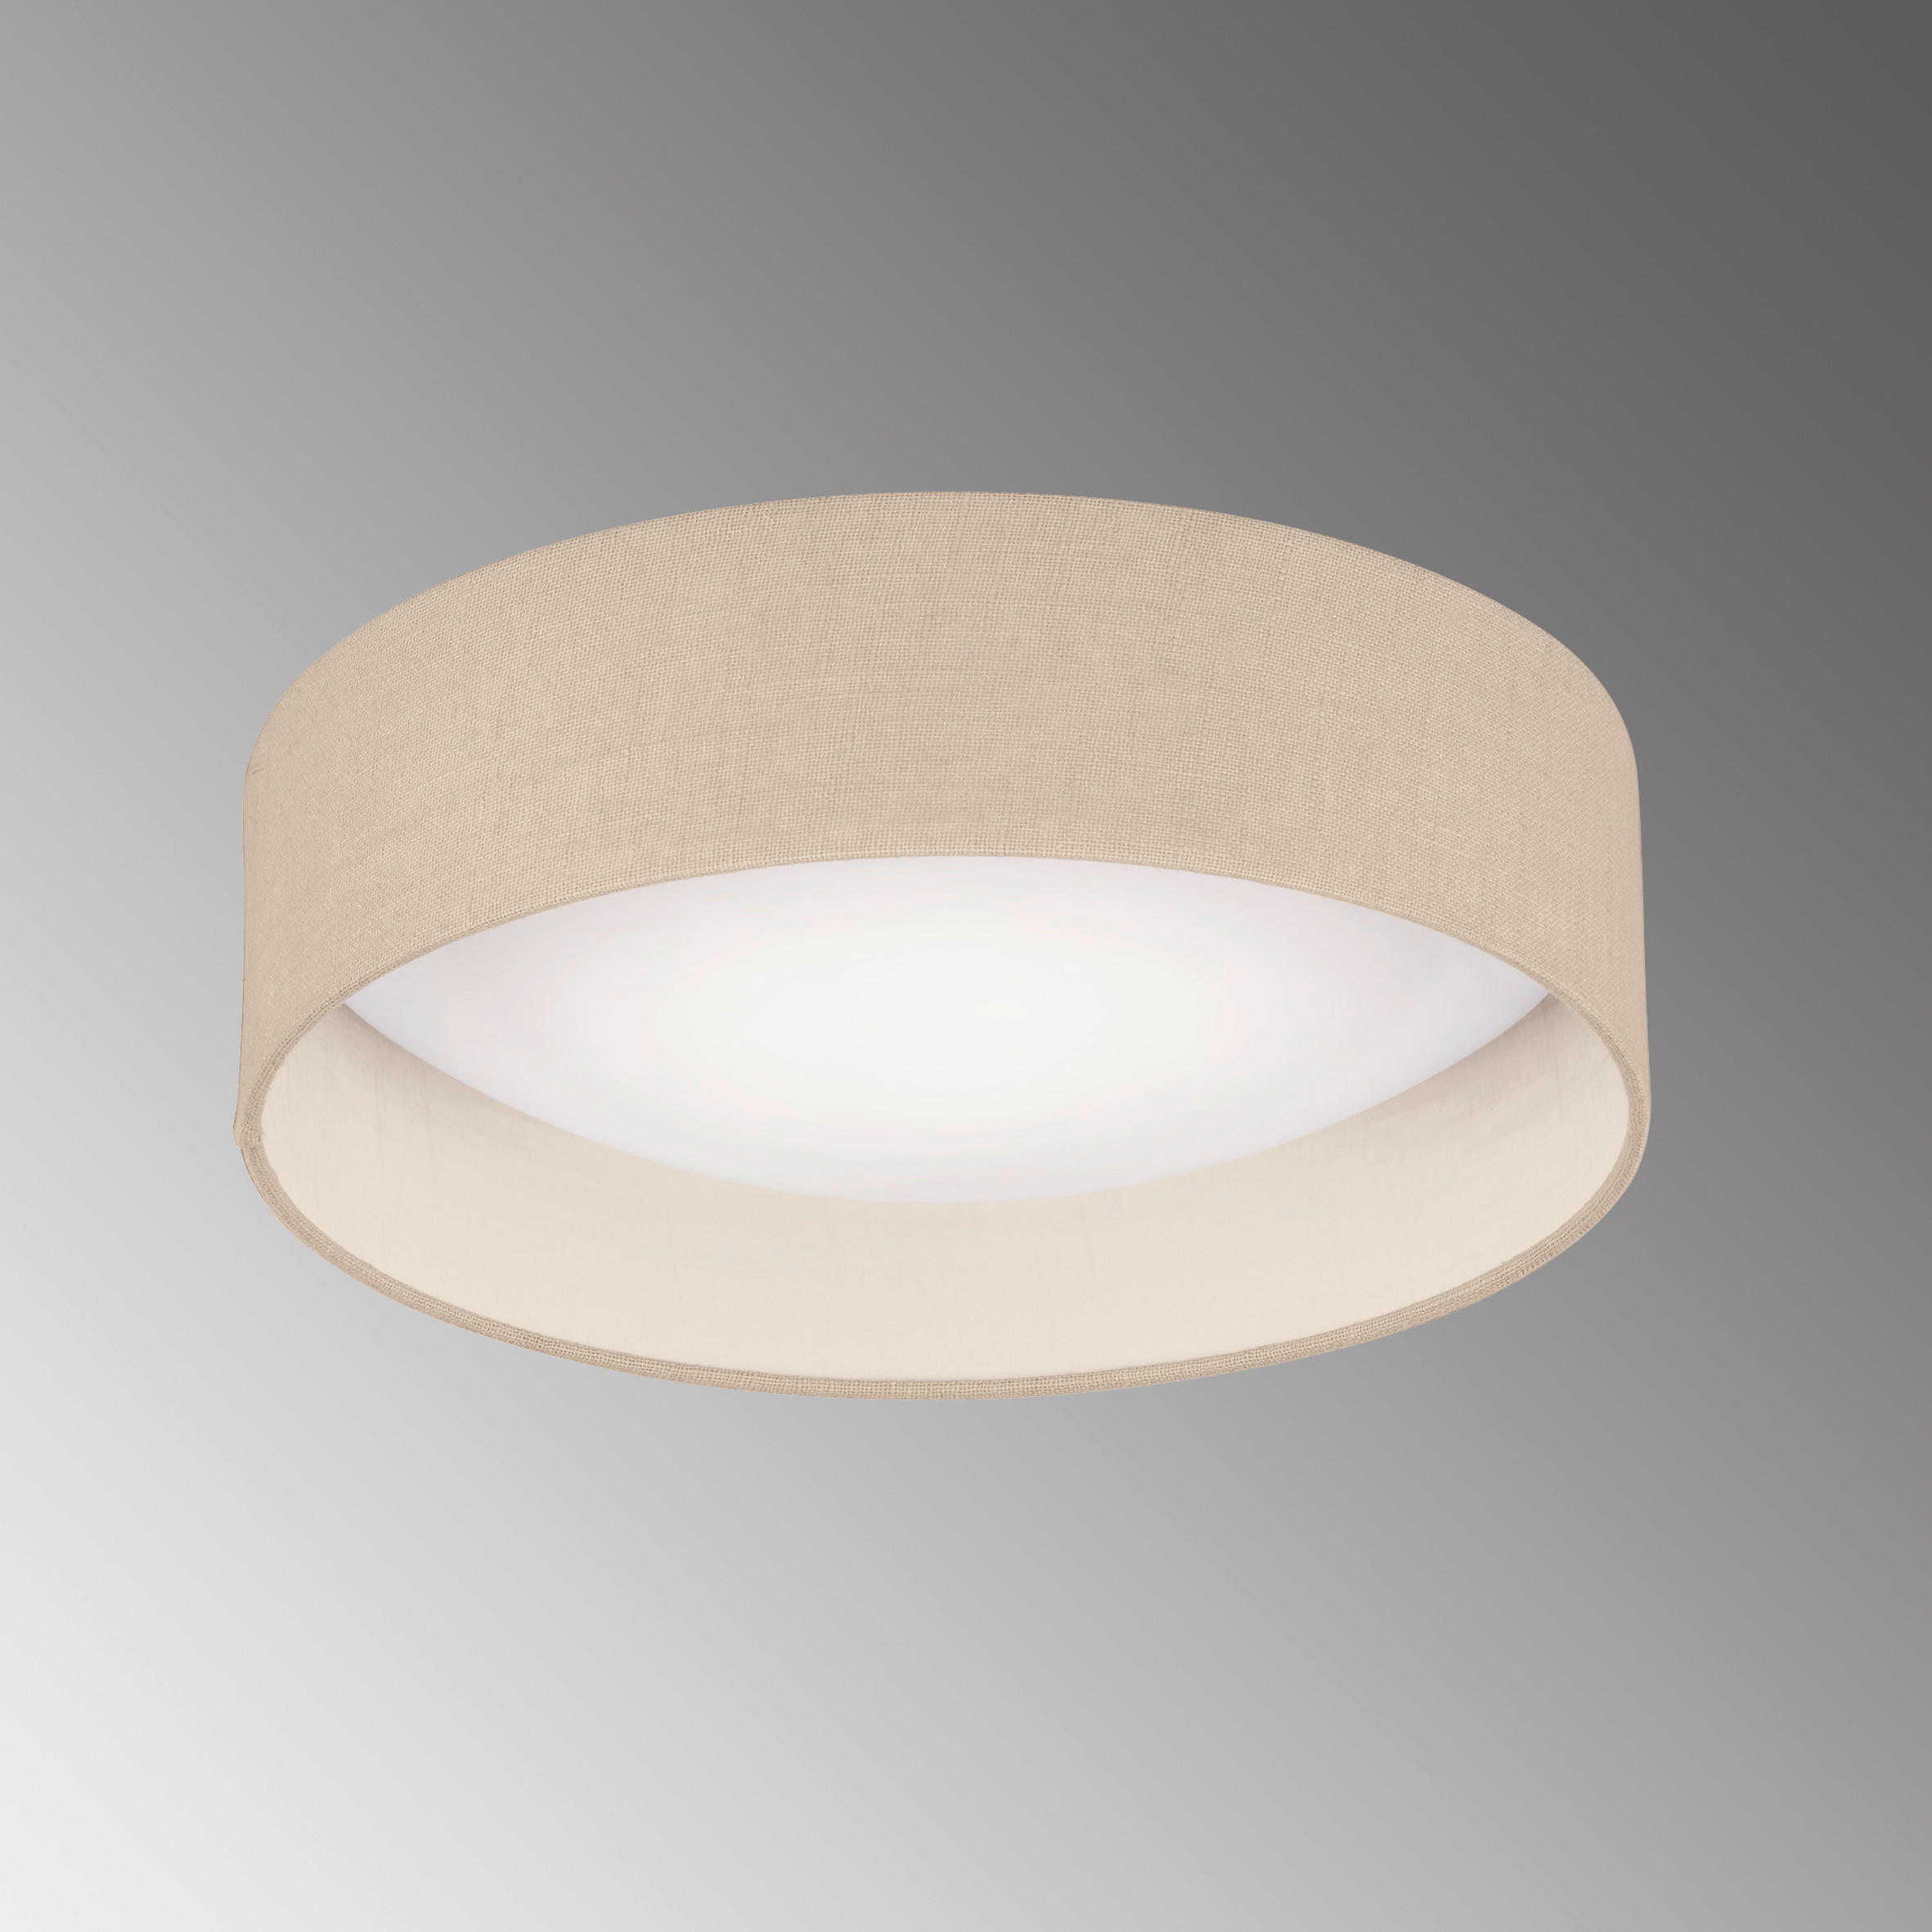 LED-DECKENLEUCHTE   40 cm   - Sandfarben/Weiß, Design, Glas/Textil (40cm)